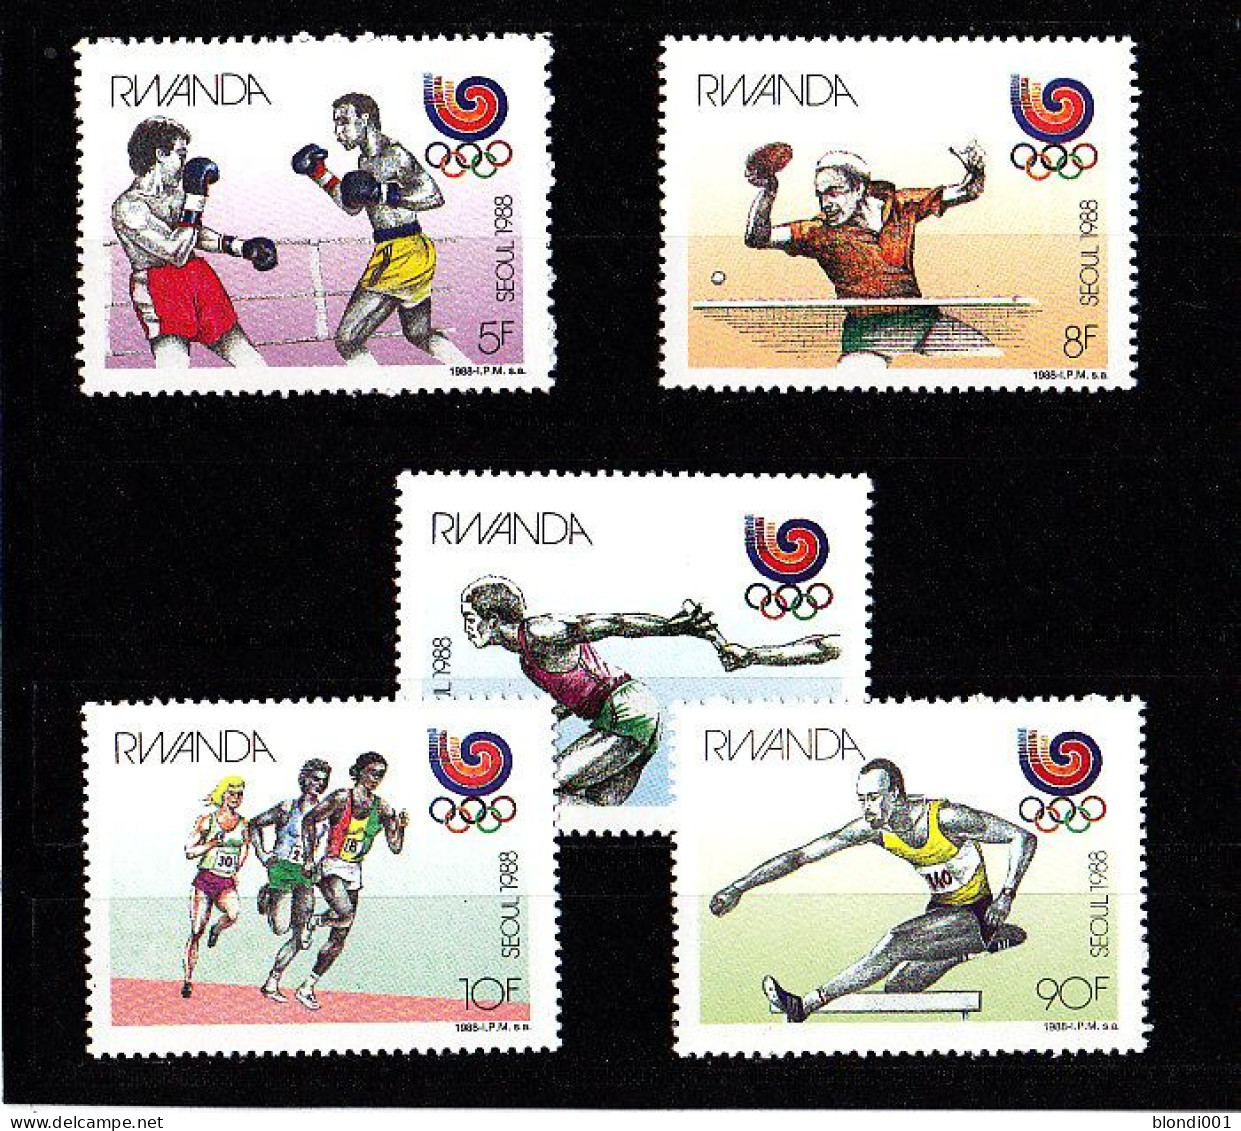 Olympics 1988 - Table Tennis - RWANDA - Set MNH - Ete 1988: Séoul